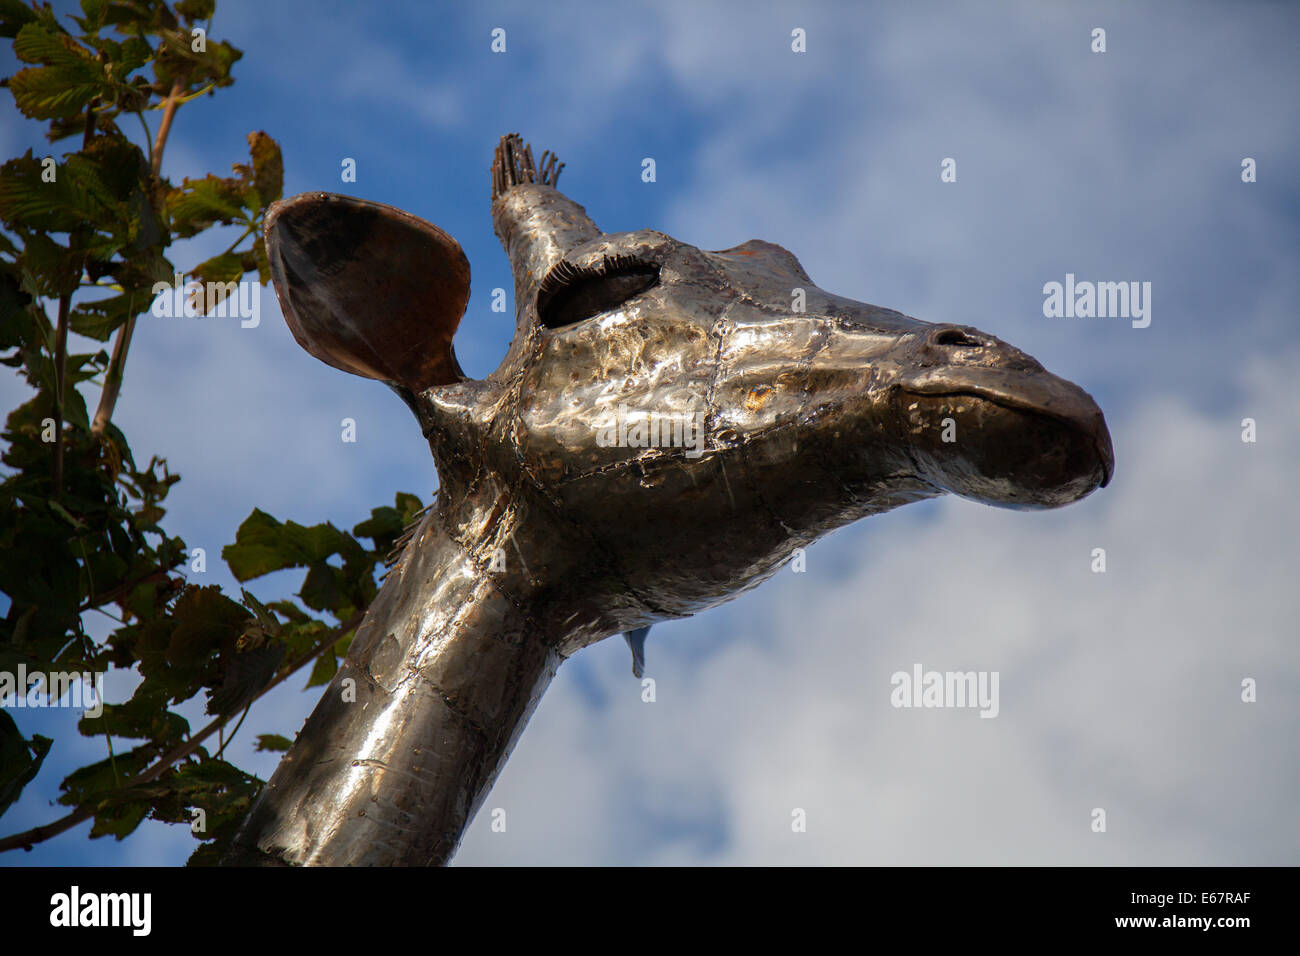 Sculpture sur la faune et la flore animales soudées en métal Art africain, PANGEA Sculptures (Giraffe) faite de métaux recyclés lors du plus grand spectacle de fleurs indépendant de Grande-Bretagne. Banque D'Images